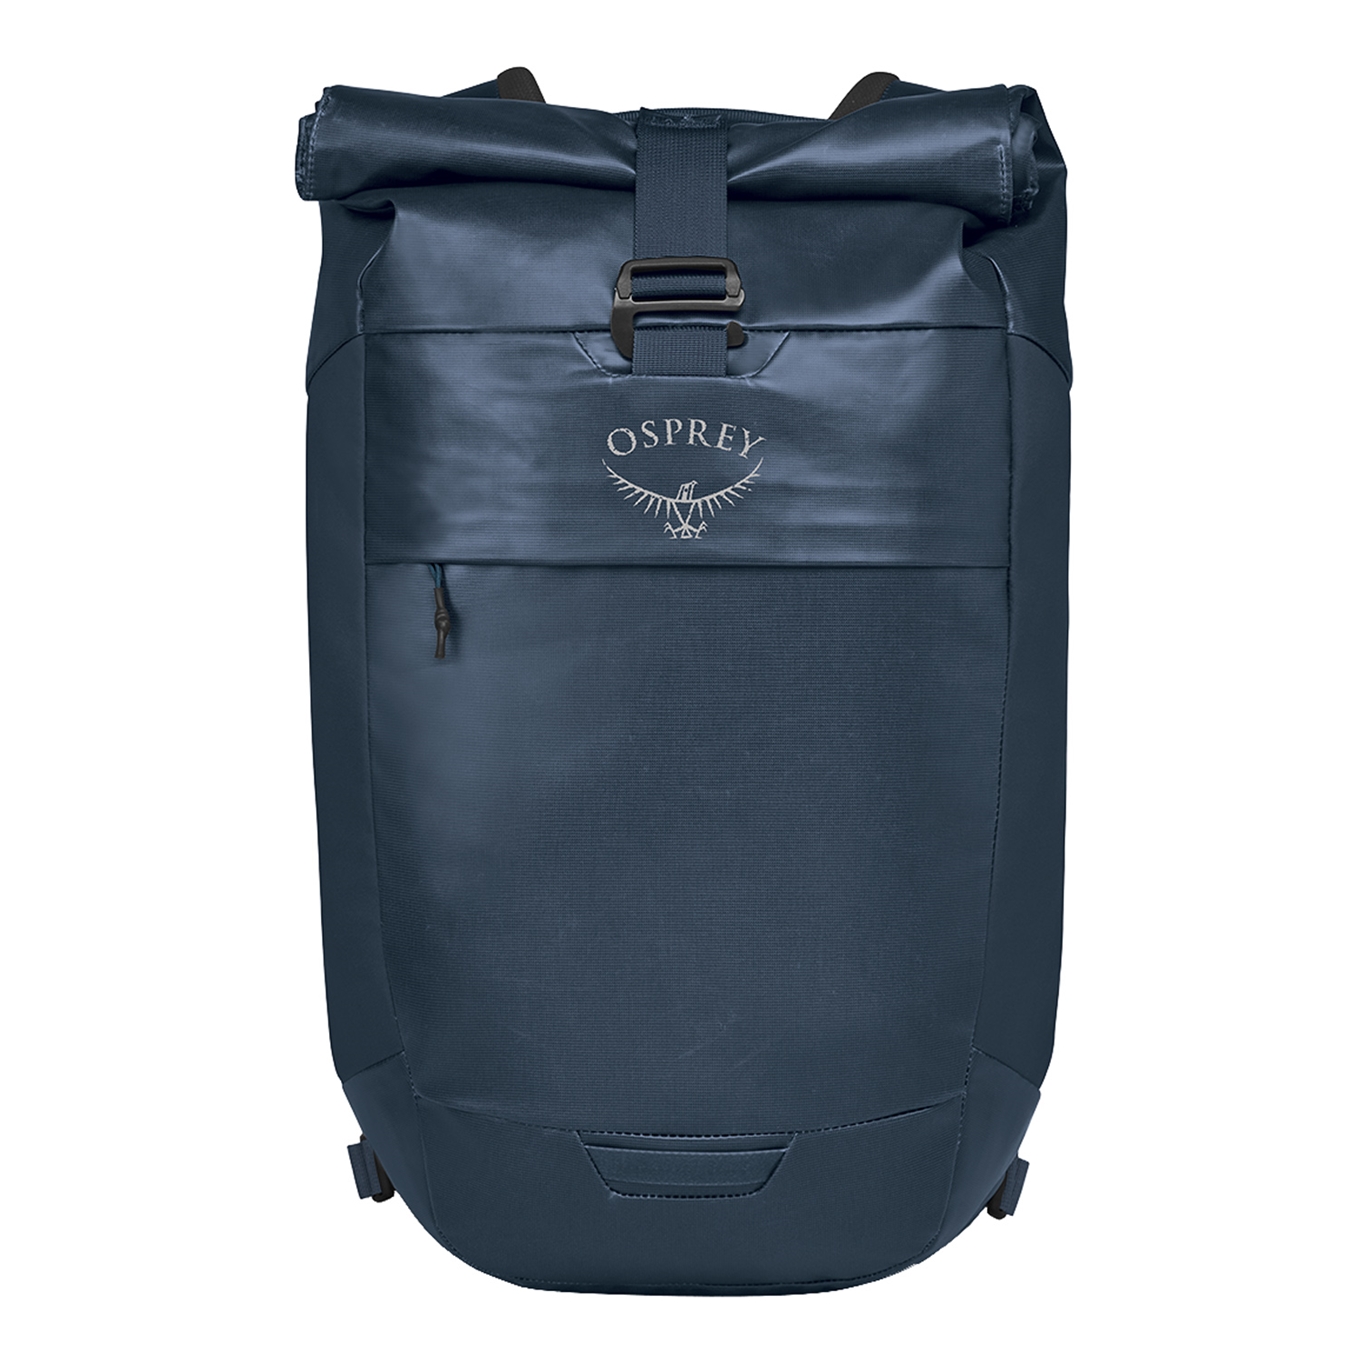 Osprey Transporter Roll Top Backpack venturi blue backpack